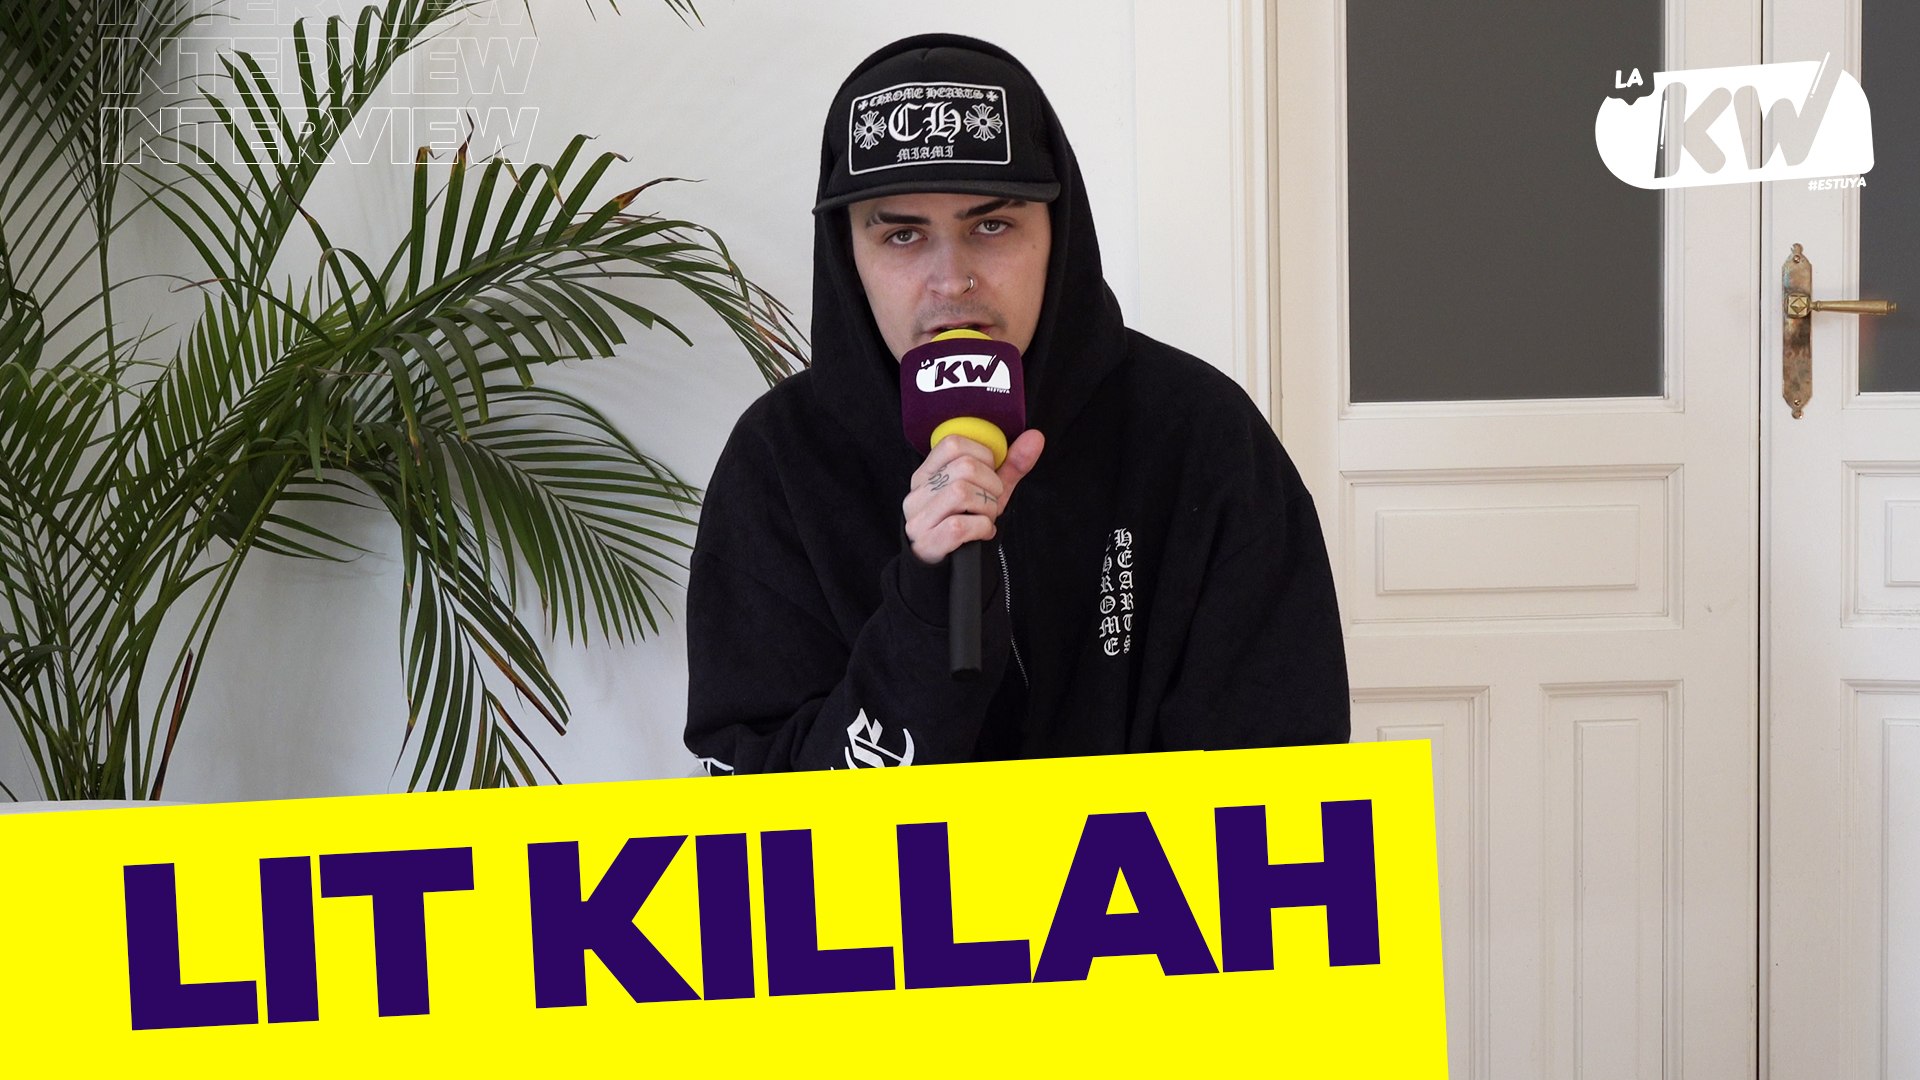 Lit Killah revela detalles de su gira y su última colaboración con Milo J en “Carta de Despedida”